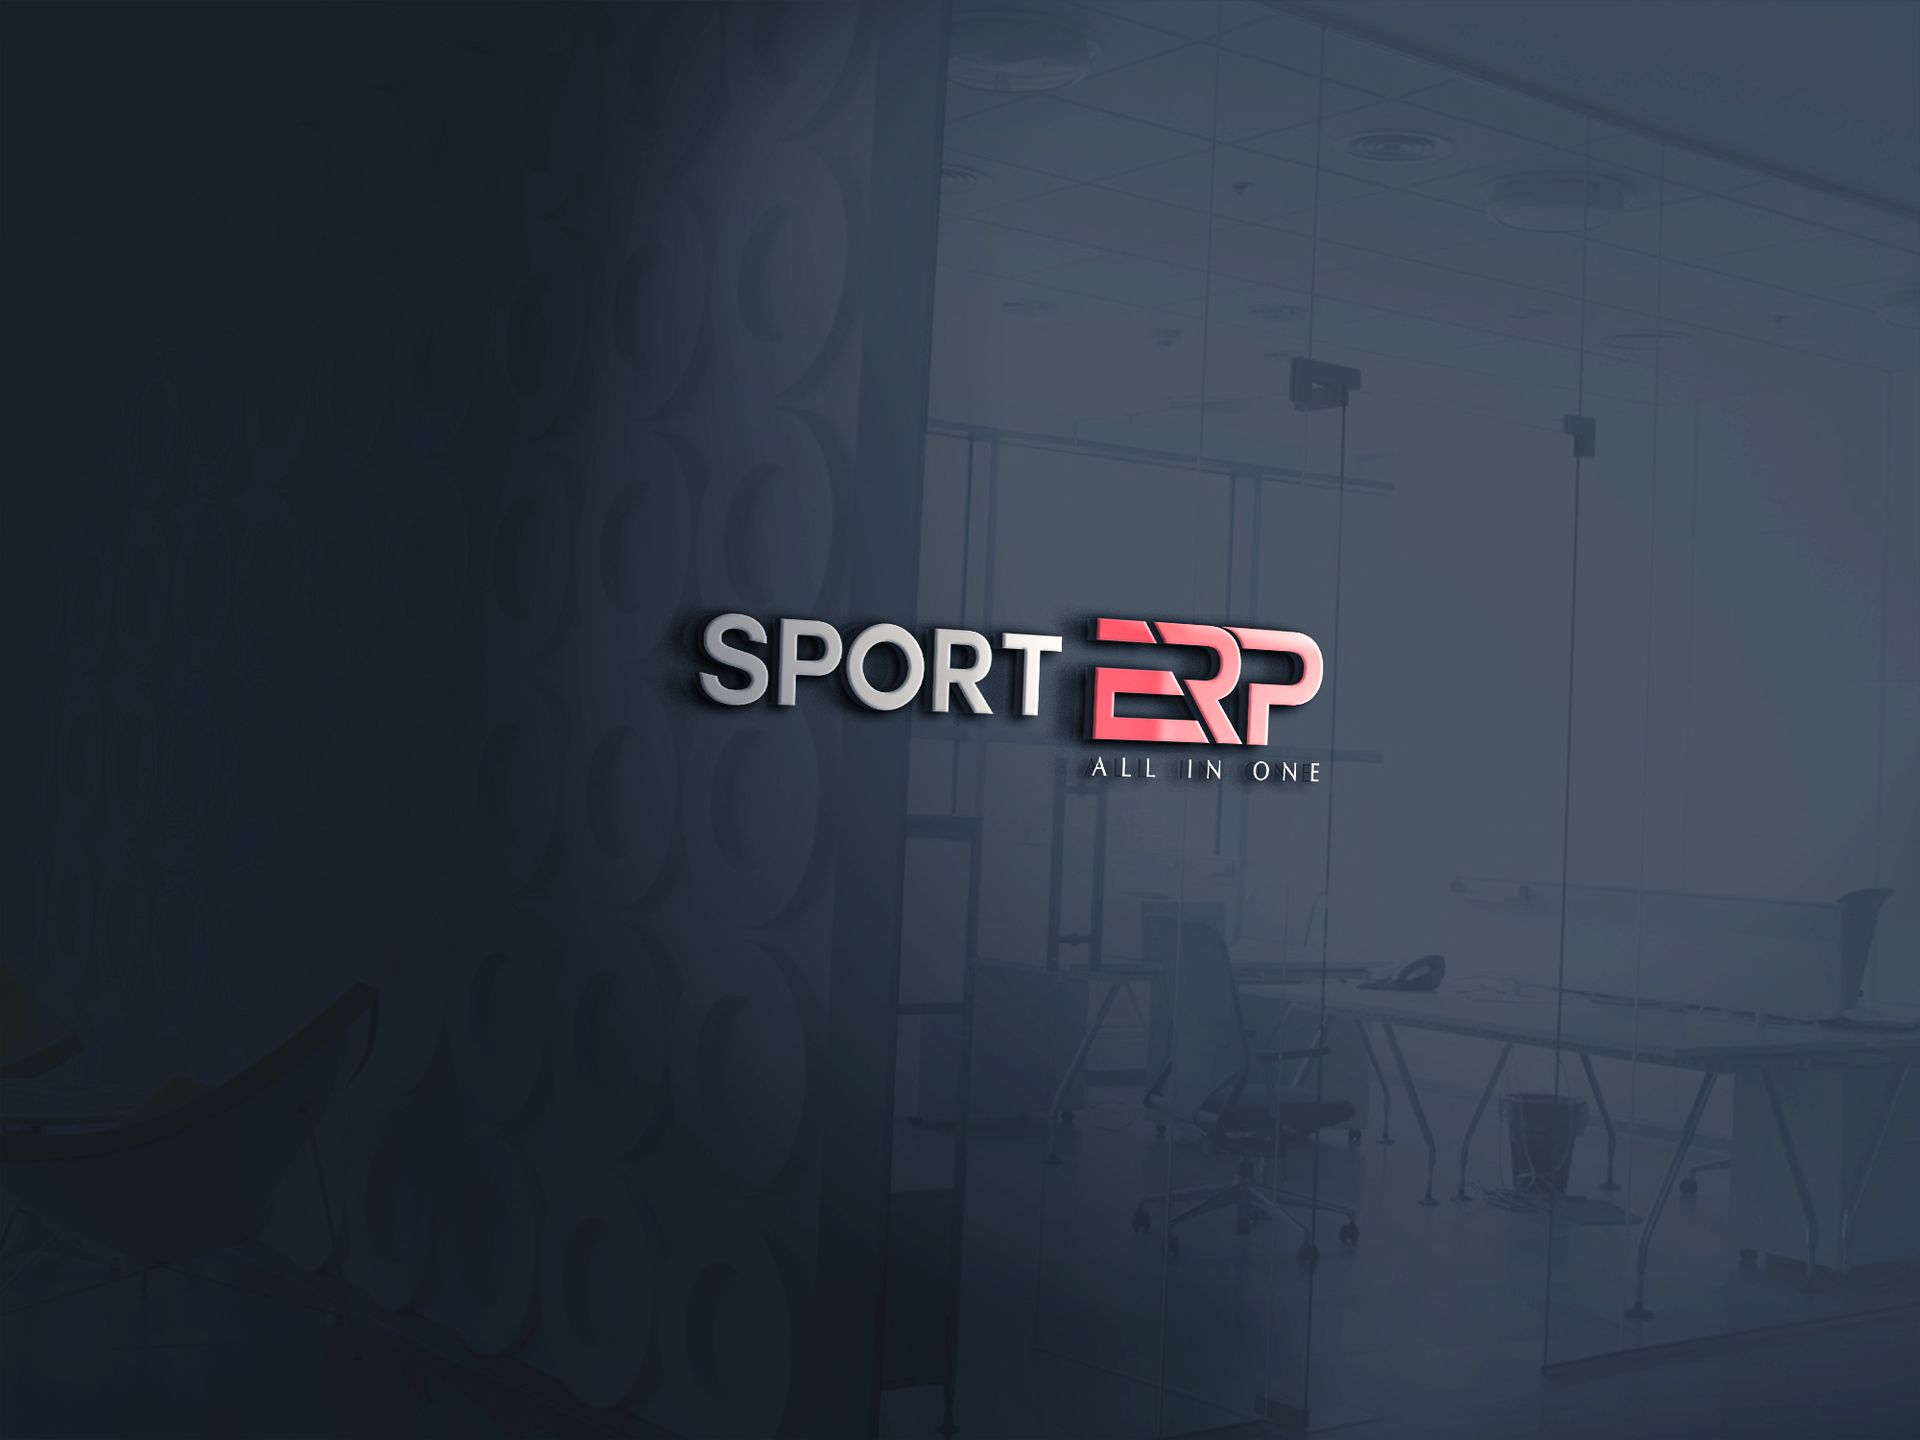 Sport ERP